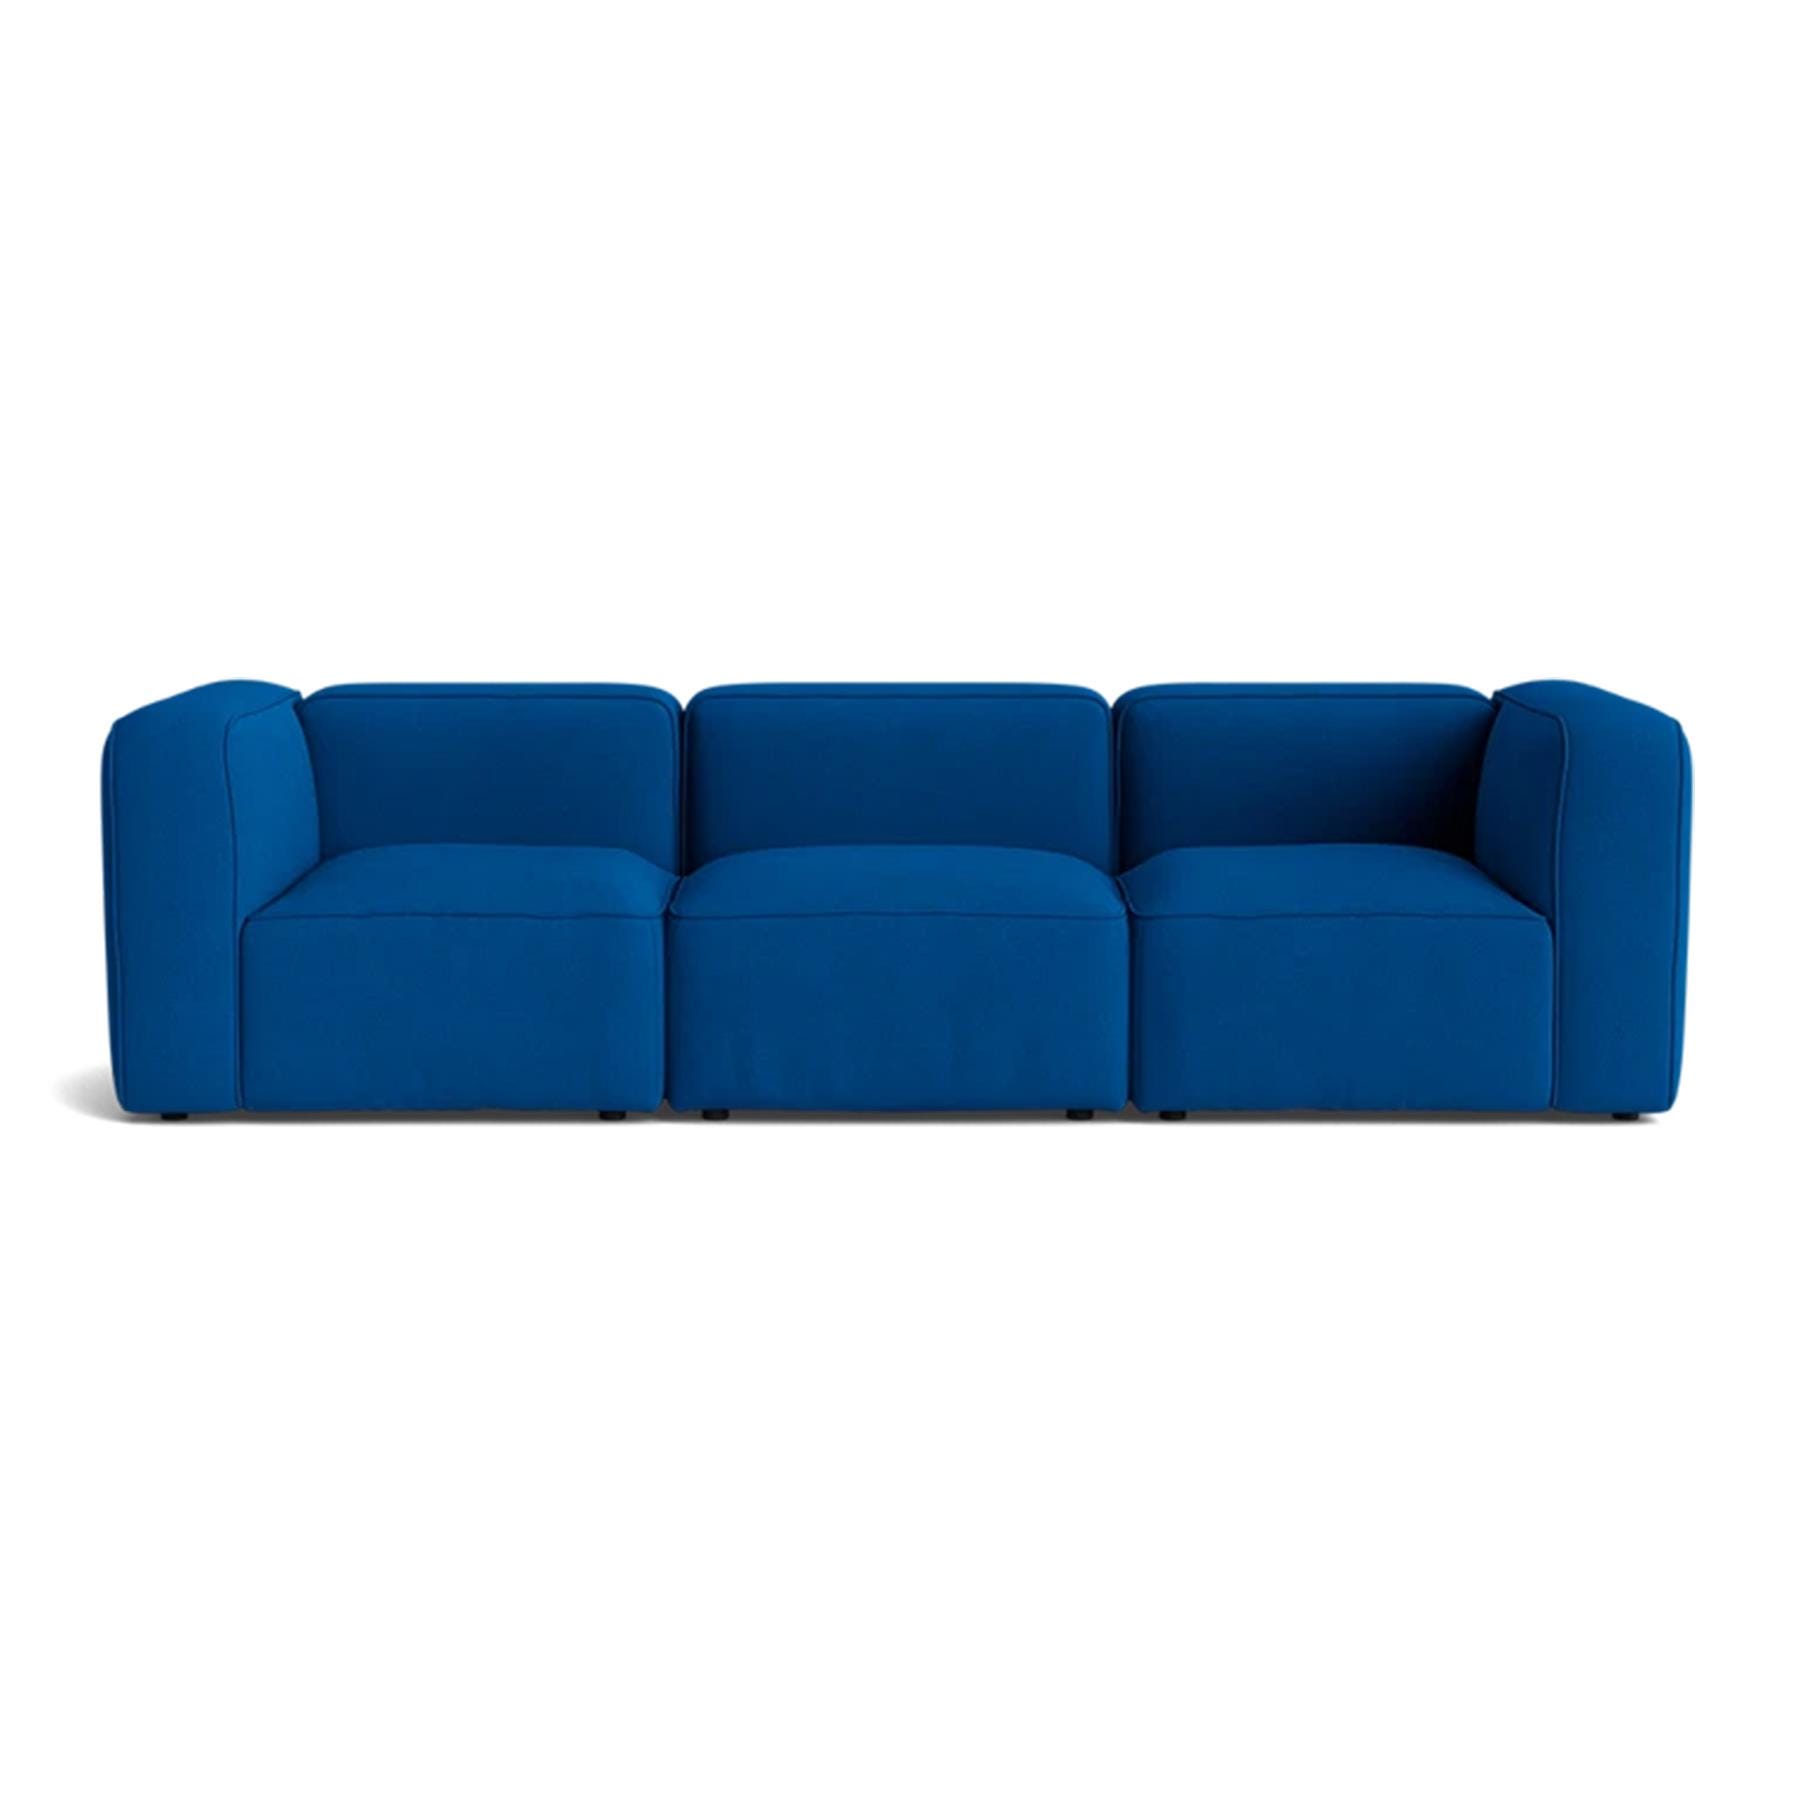 Make Nordic Basecamp 3 Seater Sofa Hallingdal 750 Blue Designer Furniture From Holloways Of Ludlow